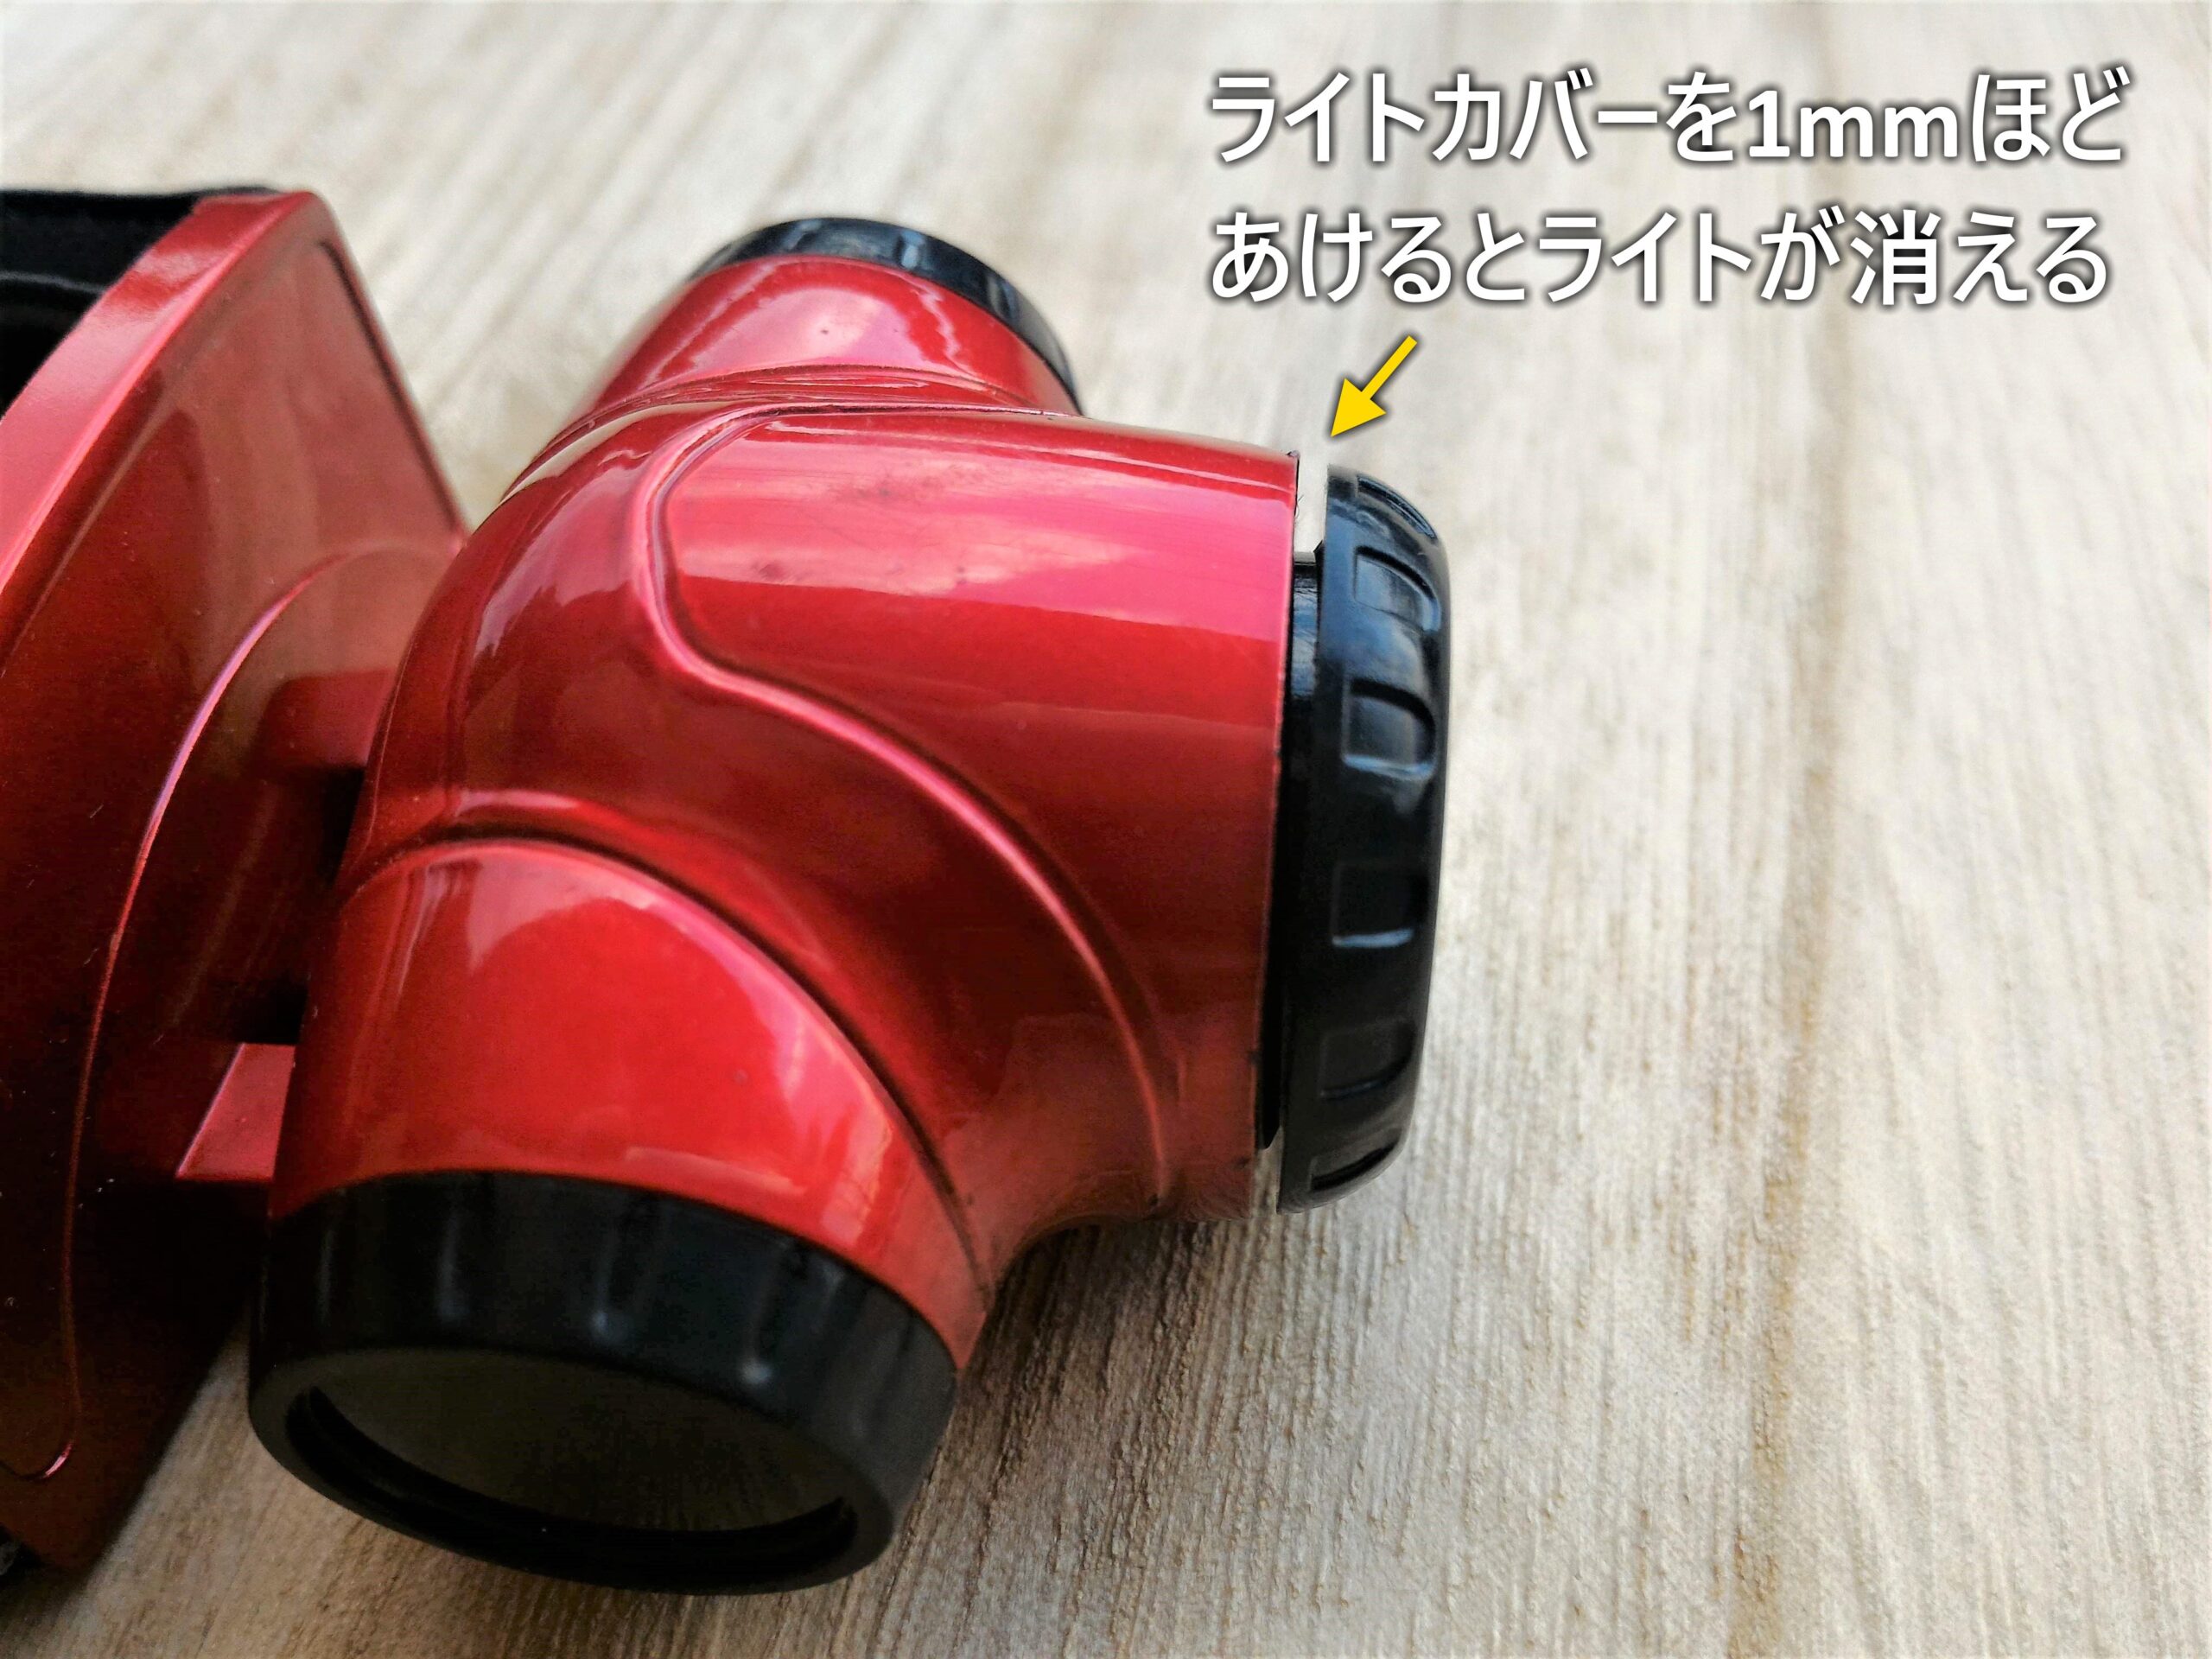 ダイソーの200円ヘッドライト - 保管時はライトカバーを1mmほどあけておく